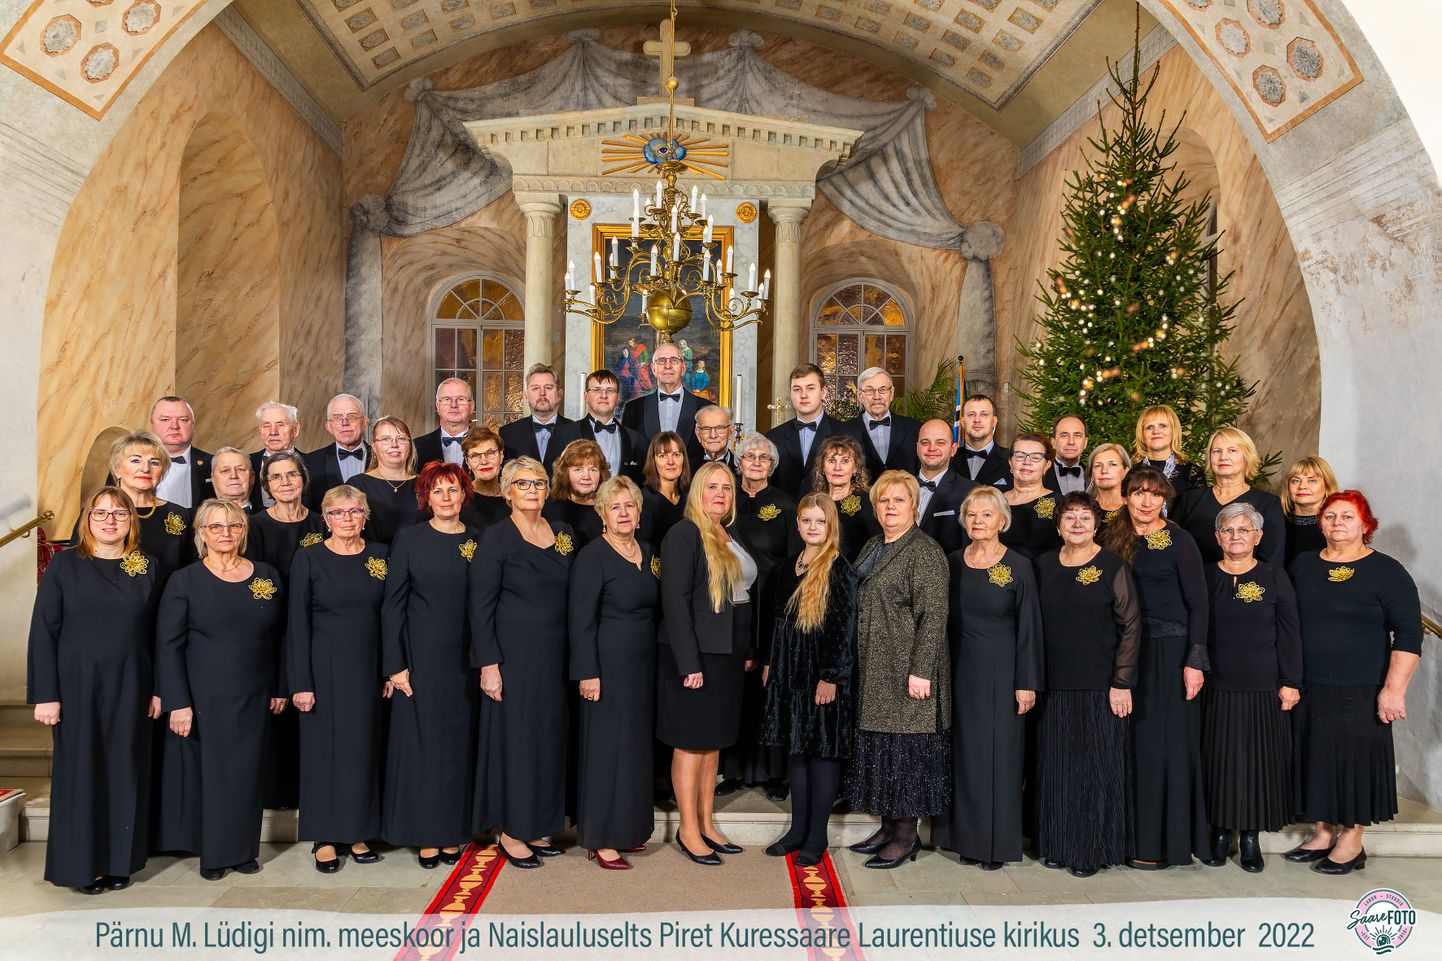 "Jõuluaeg on tulemas": Pärnu M. Lüdigi nimeline meeskoor ja naislauluselts Piret Laurentiuse kirikus 3. detsembril